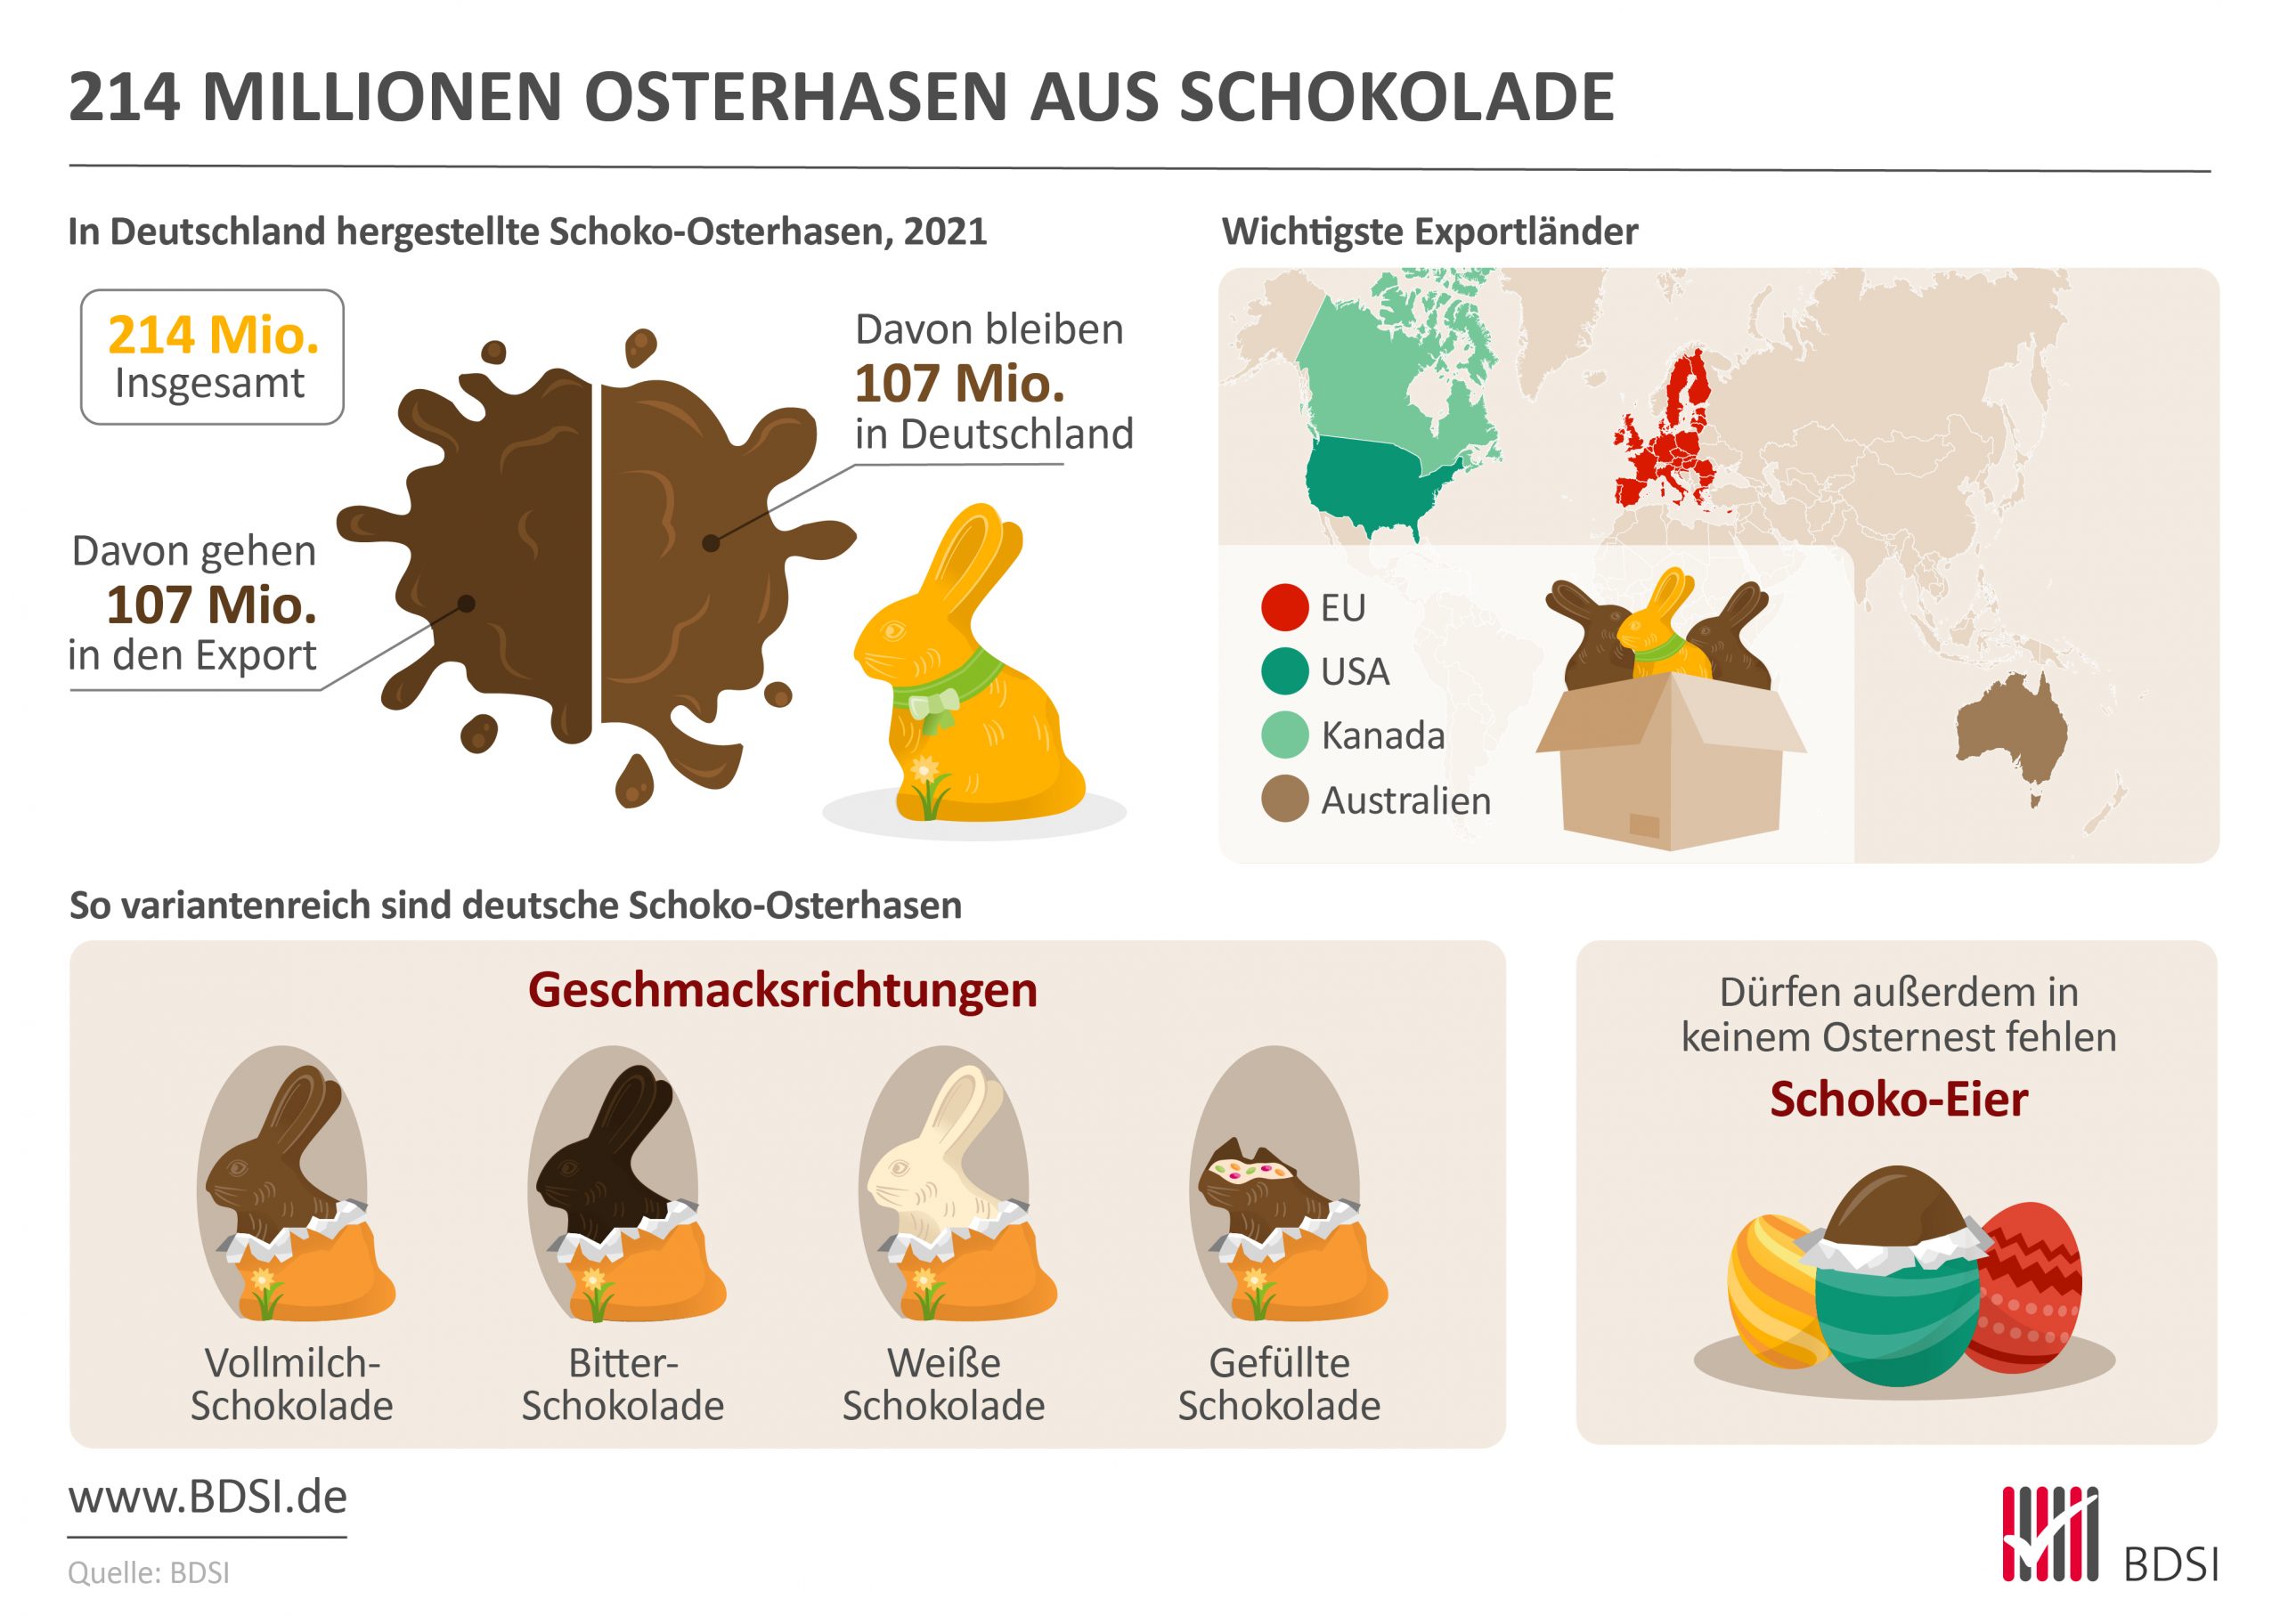 Eine Infografik: 214 Millionen Osterhasen wurden 2021 in Deutschland hergestellt